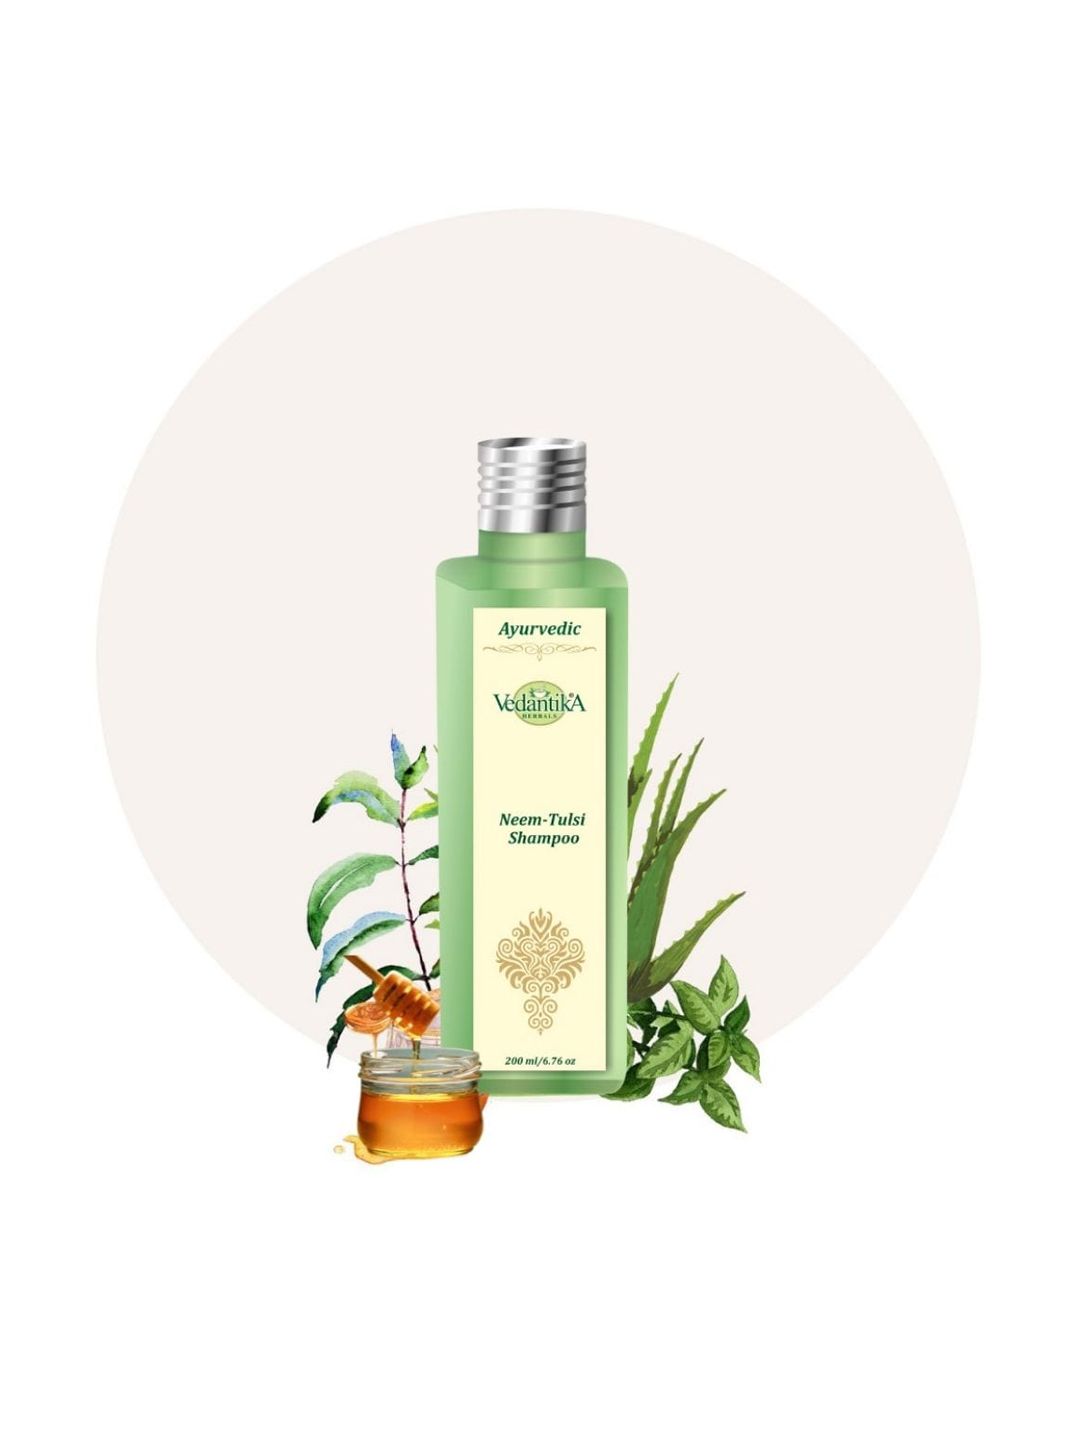 Vedantika Herbals Ayurvedic Neem Tulsi Shampoo with Honey 200 ml Price in India